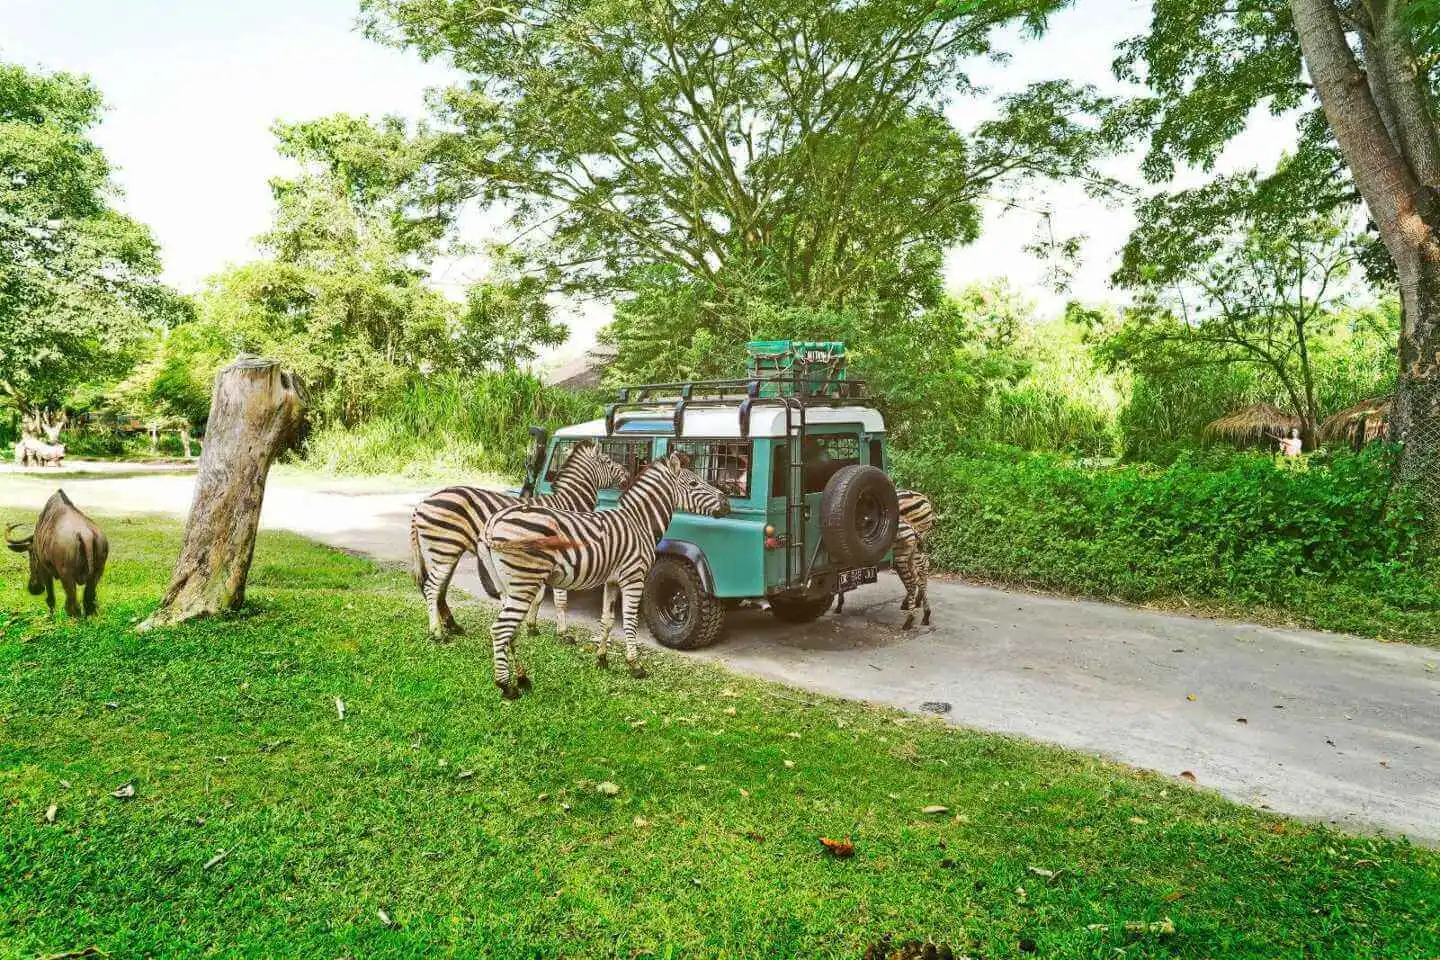 Bali Safari Park - The Official Website of Taman Safari Indonesia III